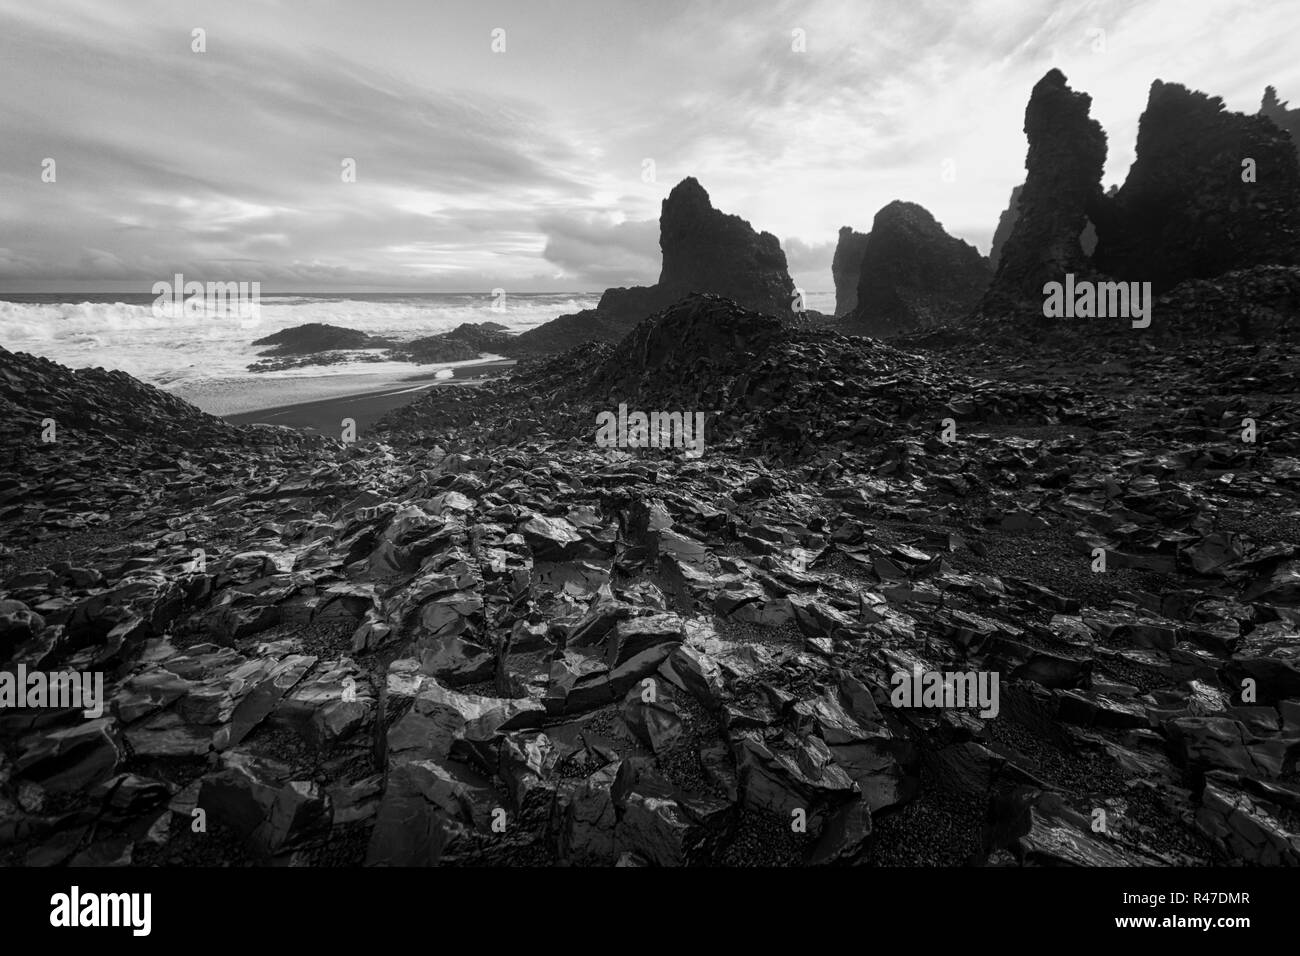 Coastal landscape in Iceland Stock Photo